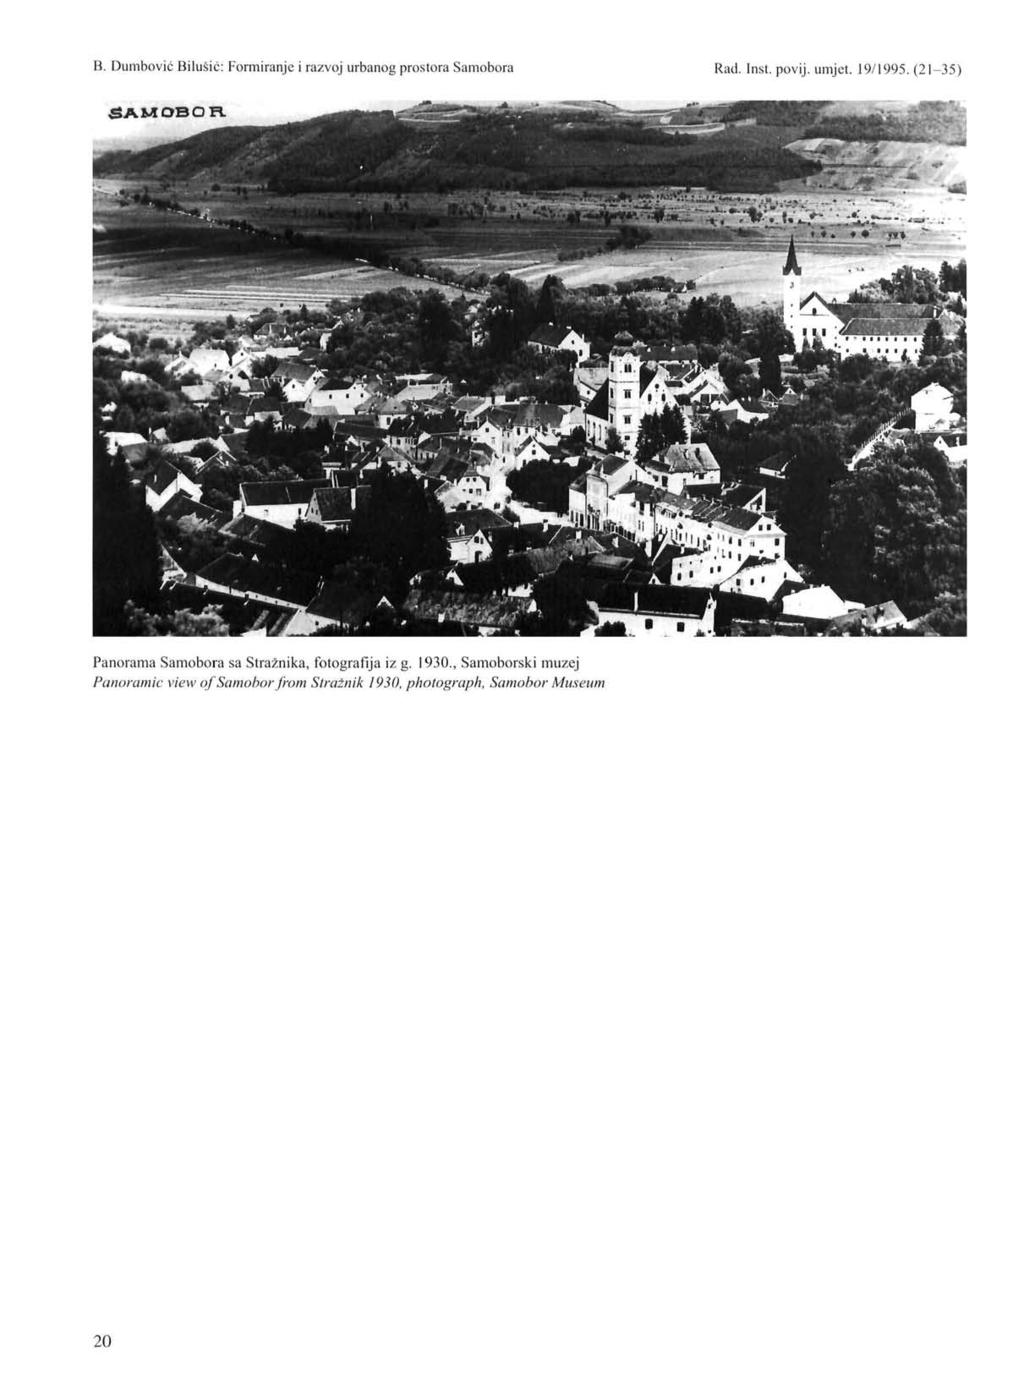 Panorama Samobora sa Stražnika, fotografija iz g. 1930.